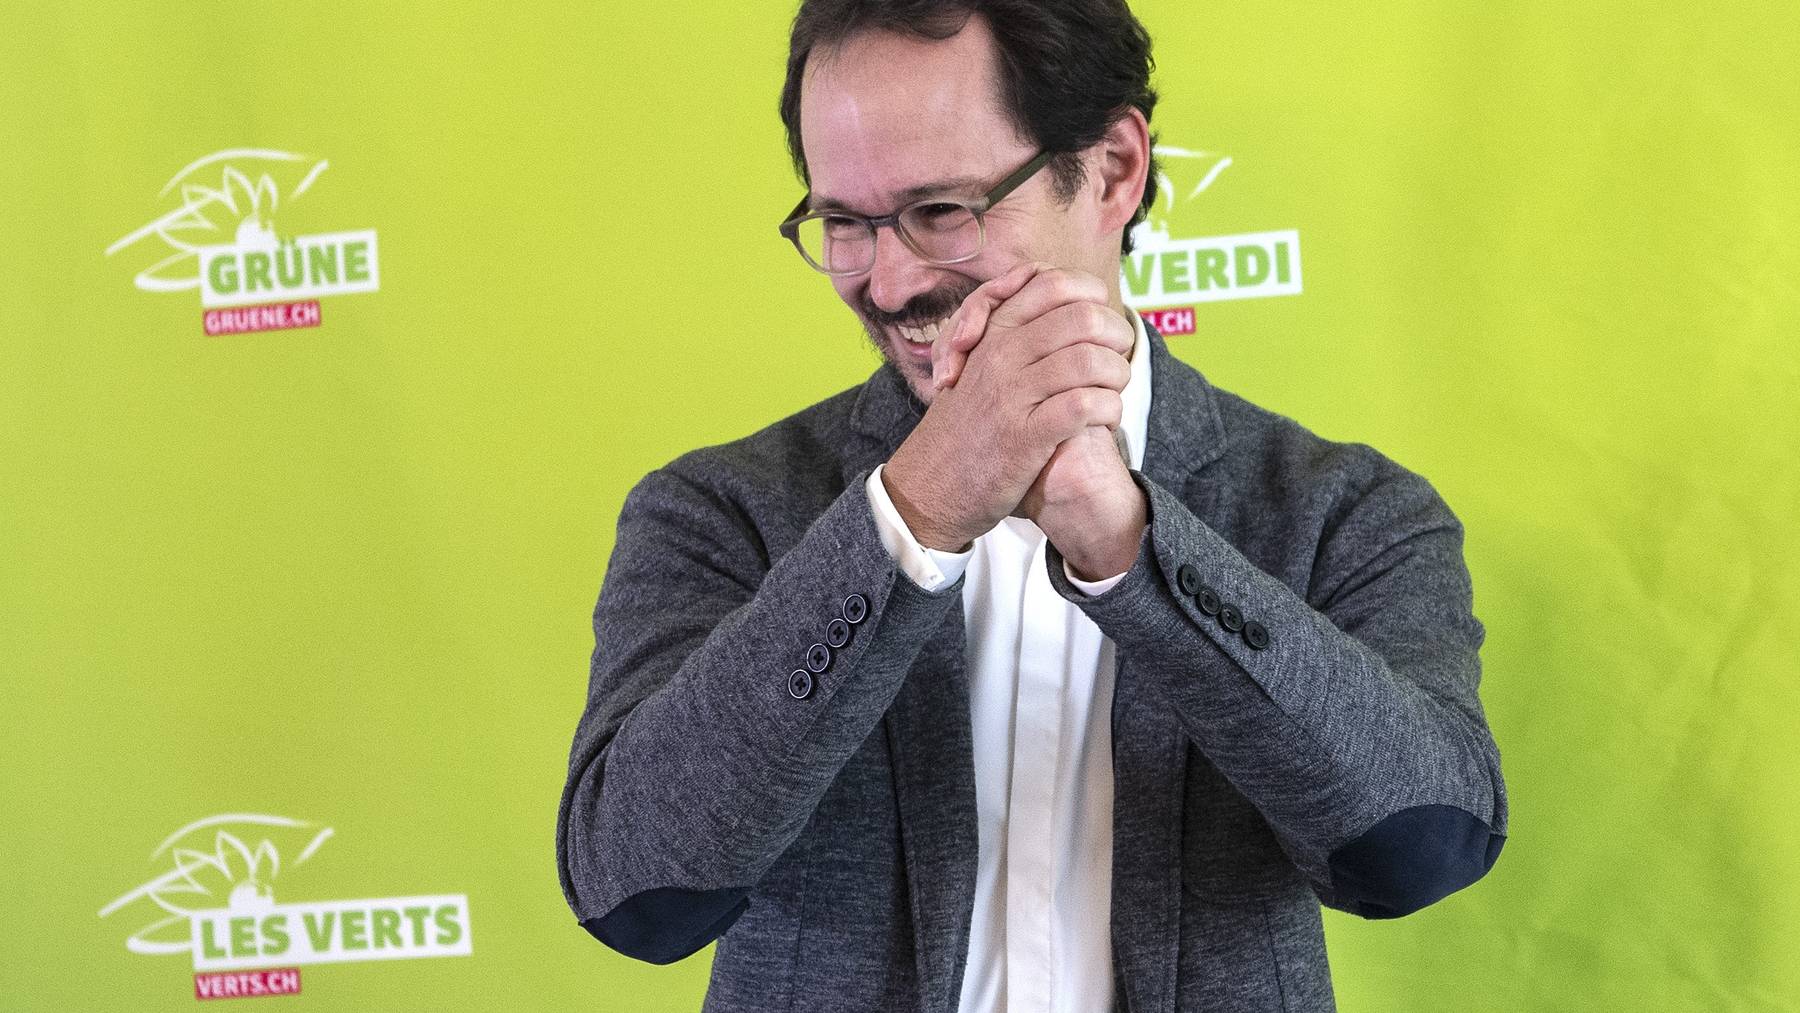 Balthasar Glättli tritt die Nachfolge von Regula Rytz als Parteipräsident der Grünen an.